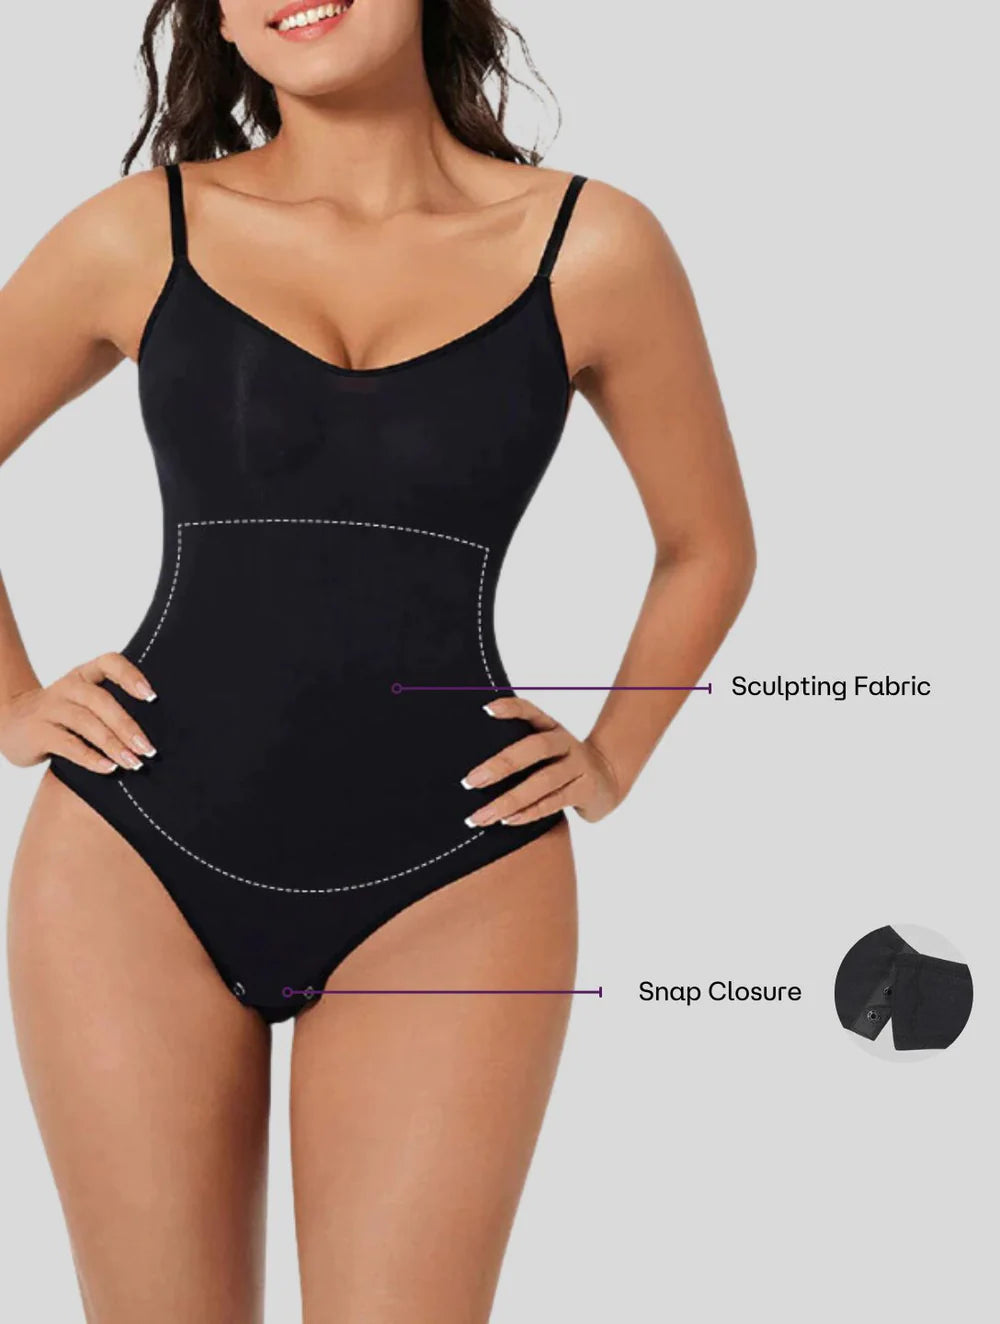 Landola™ Sculpting Bodysuit With Snaps - Wowelo - Your Smart Online Shop